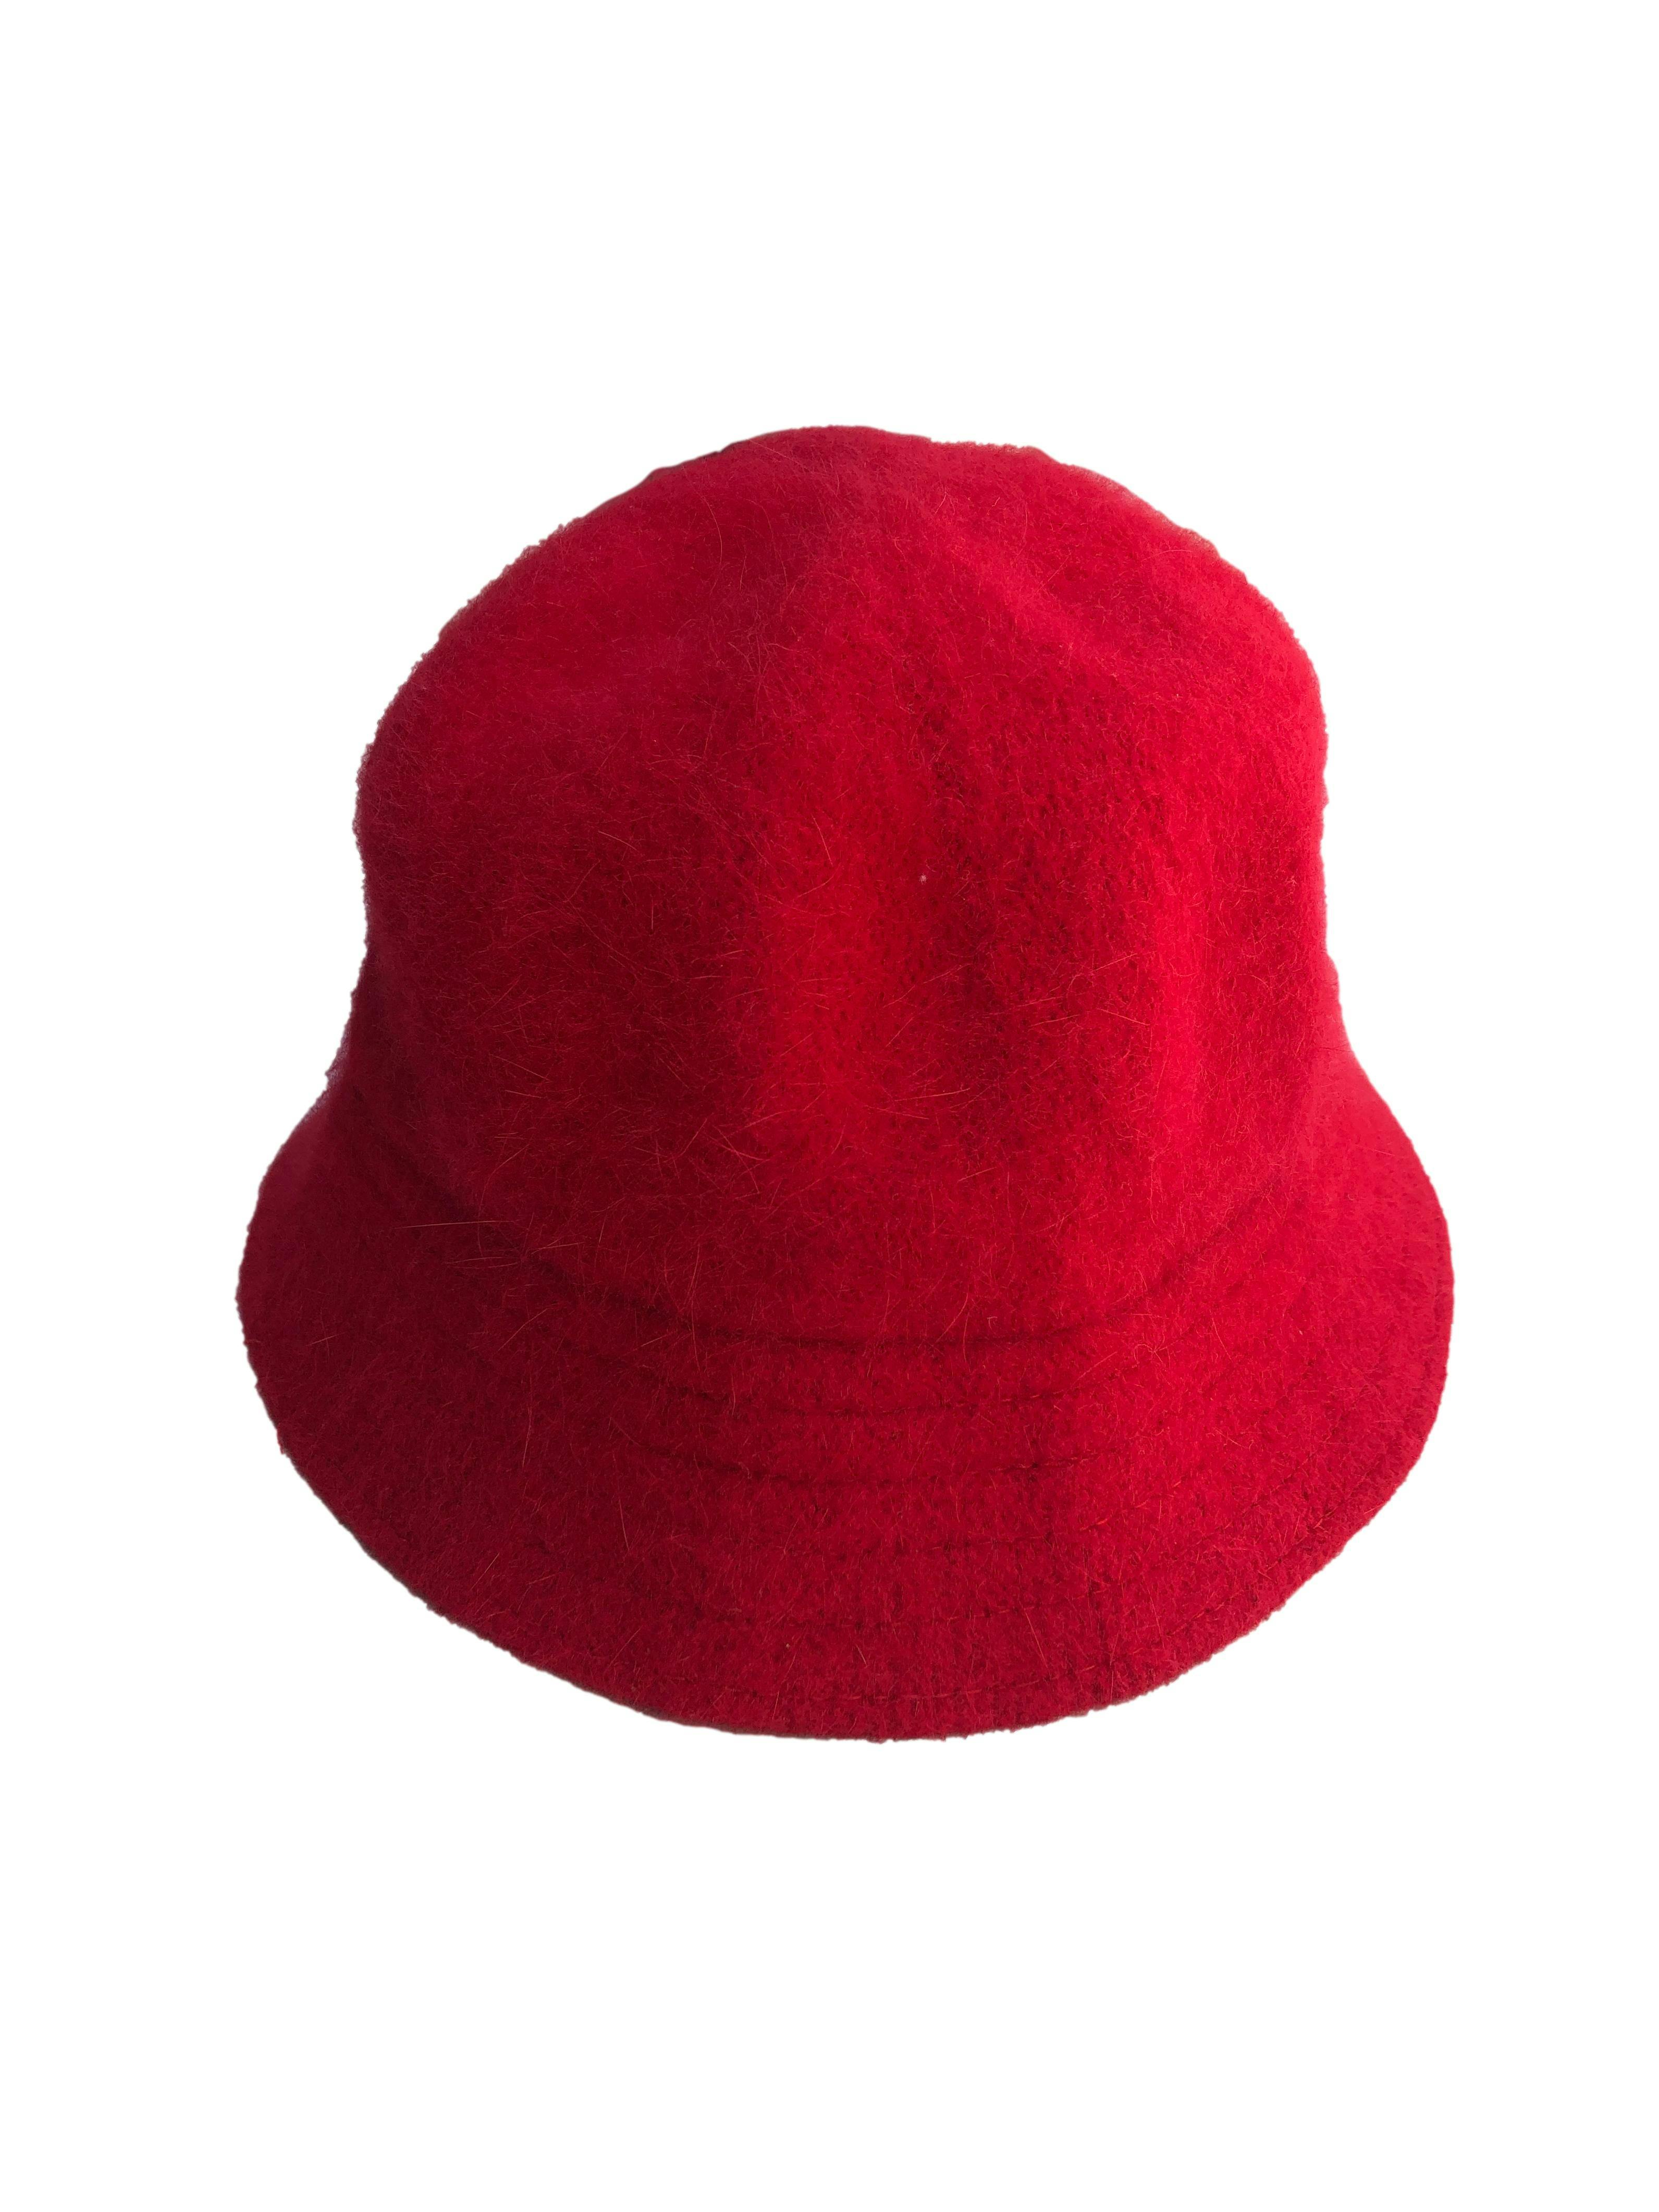 Sombrero rojo de paño con efecto pelo 80% angora. Contorno 64cm, Ala 5cm.